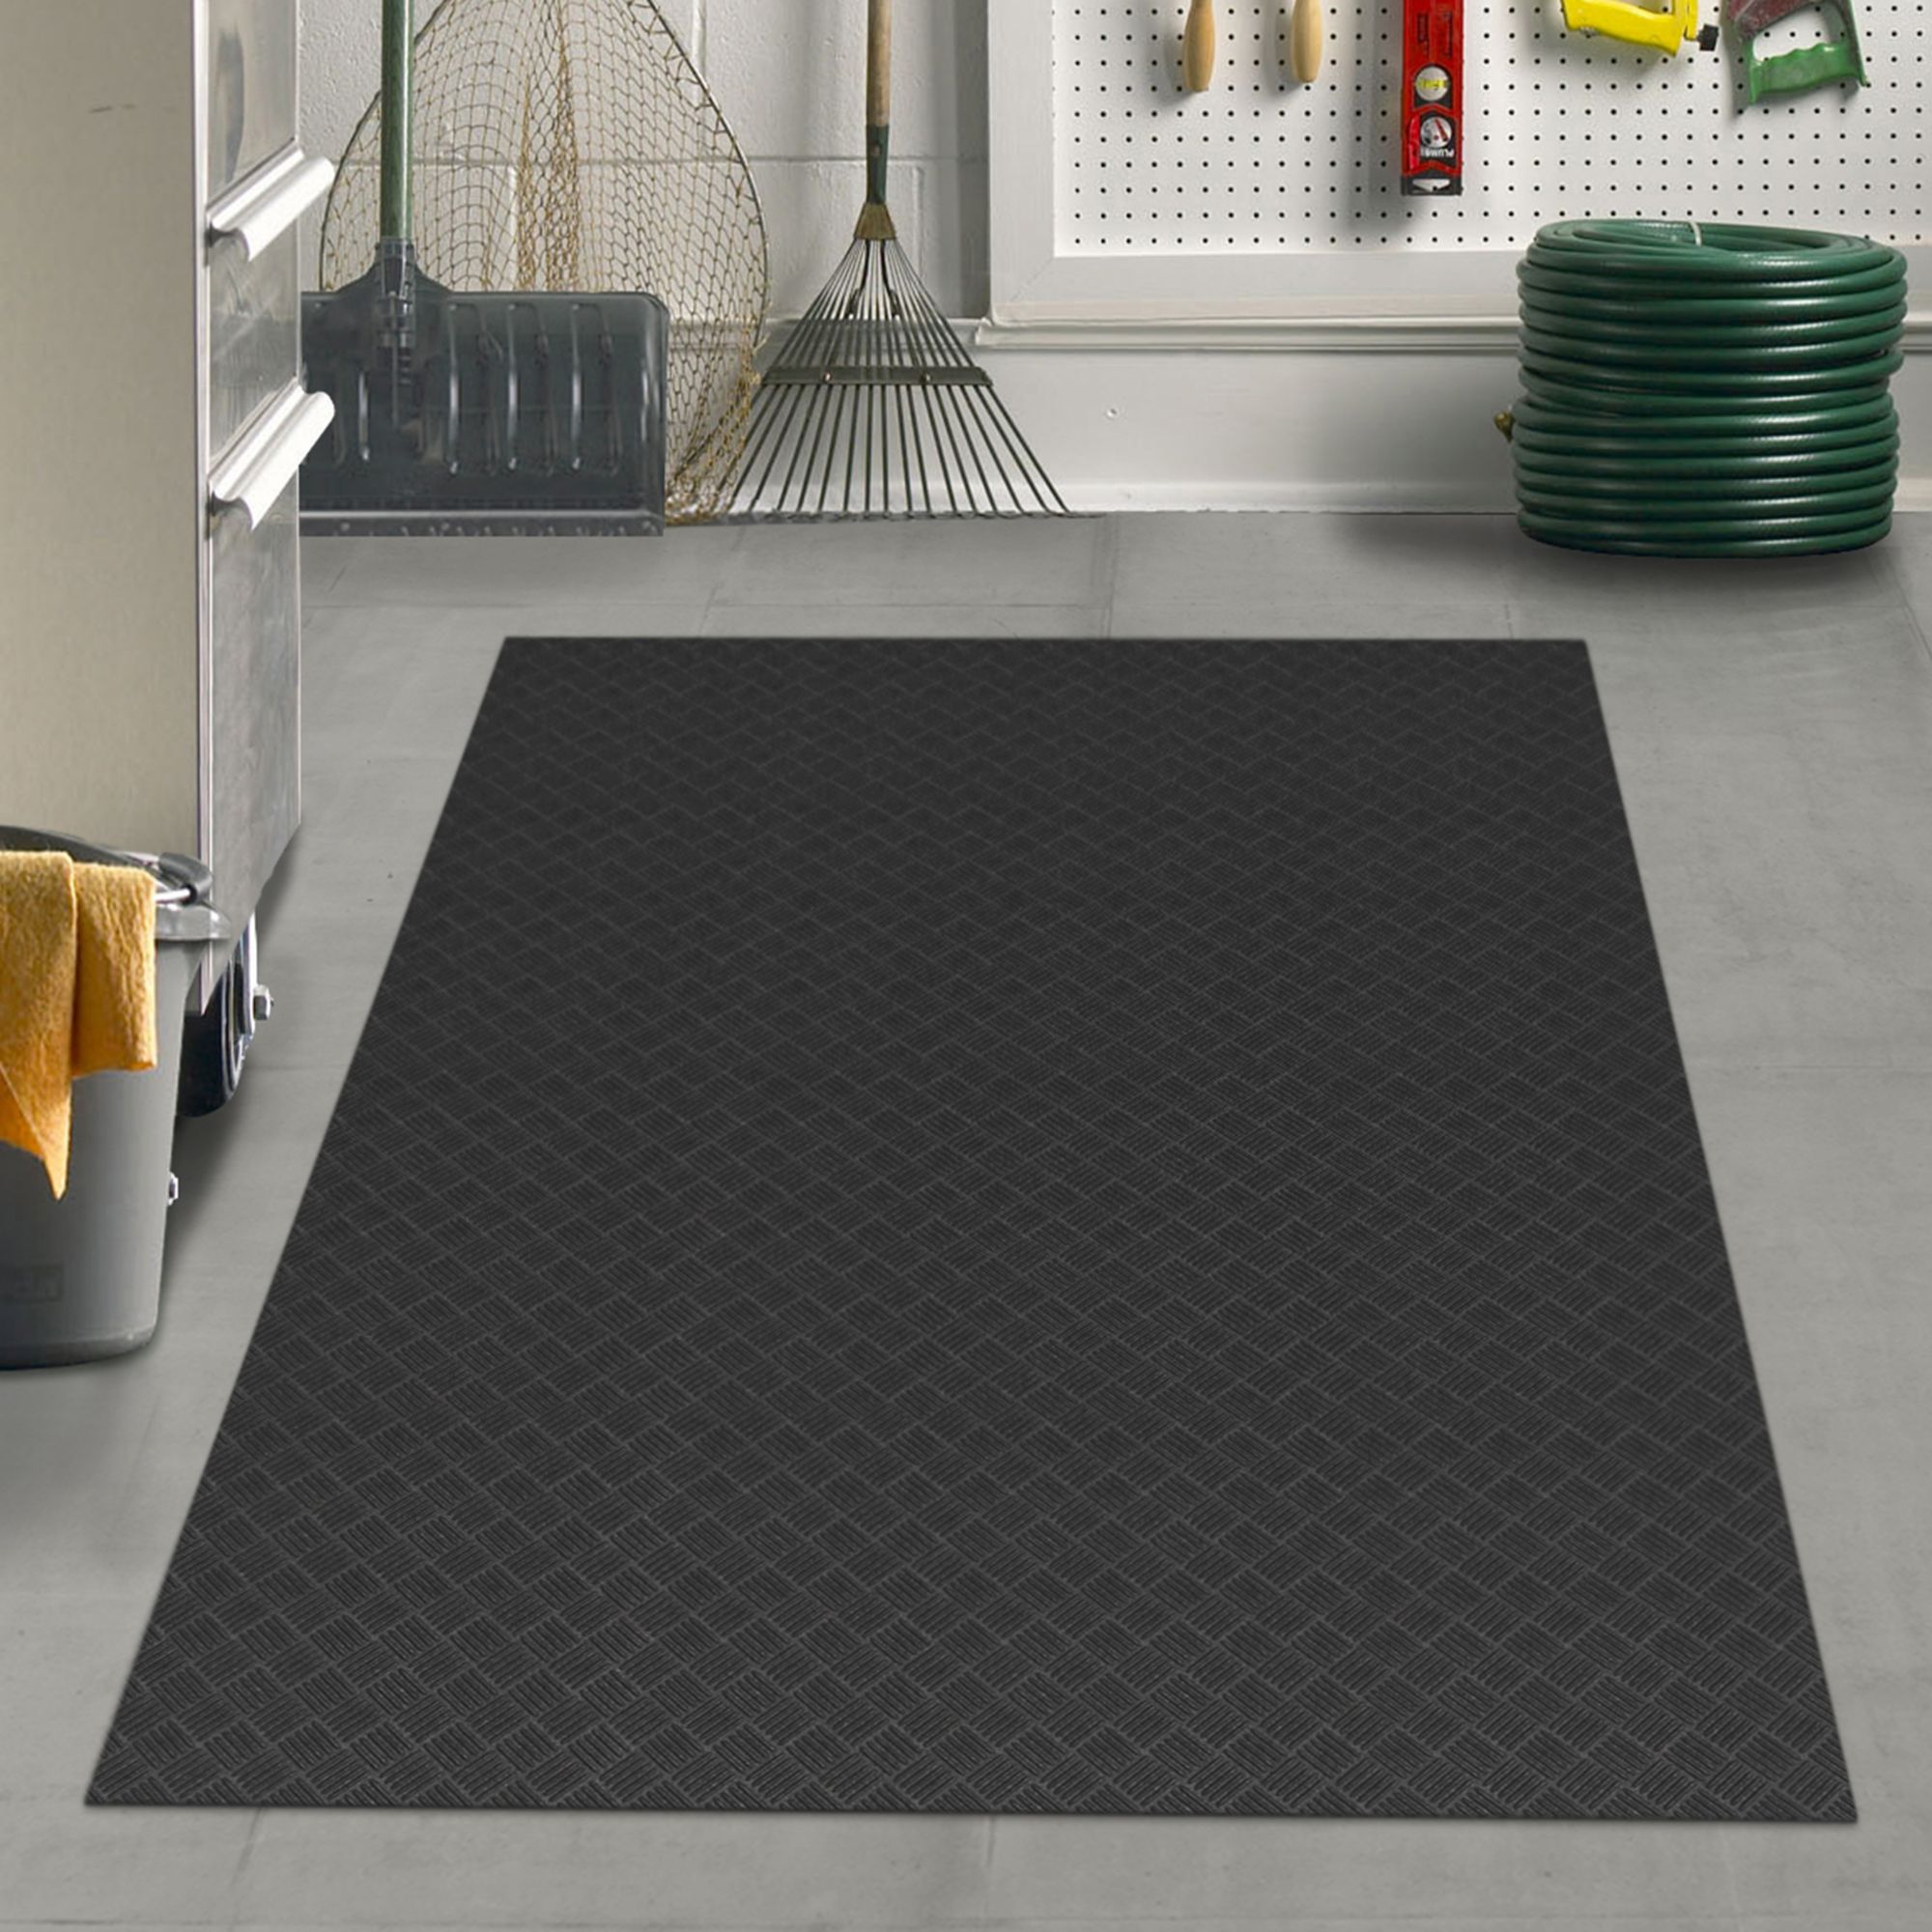 Villa Rubber Outdoor Mat  Rubber mat, Outdoor rubber mats